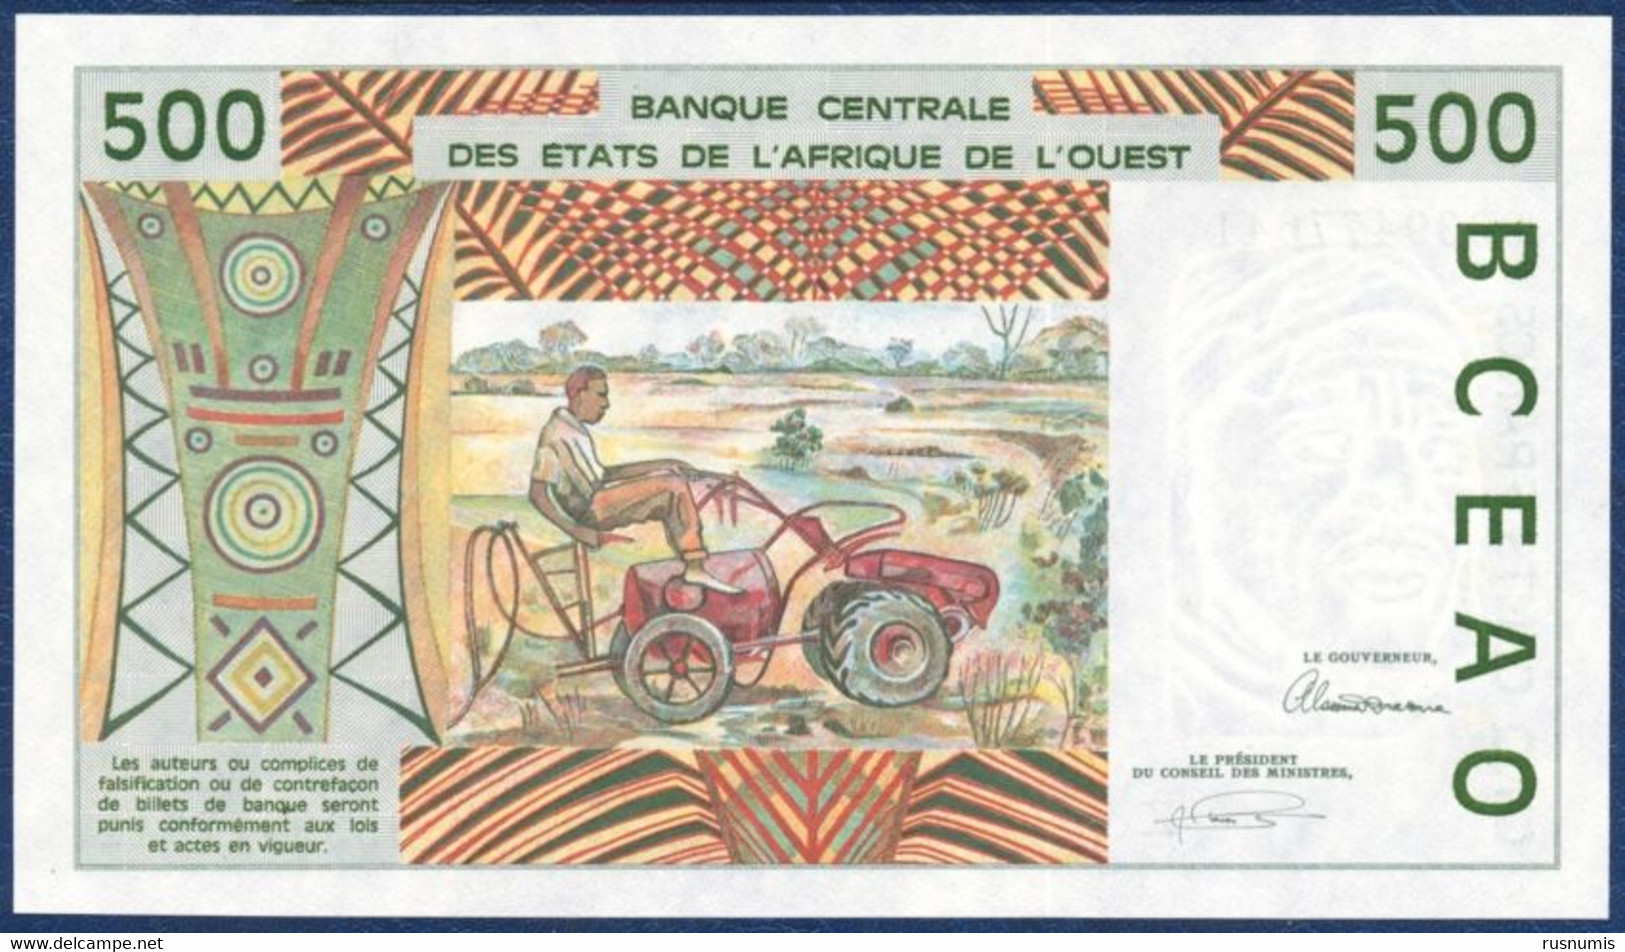 WEST AFRICAN STATES Afrique De L'Ouest - SENEGAL SENEGAL 500 FRANCS P-710Kc Hydro Dam, Man - Garden Tractor 1993 UNC - Senegal